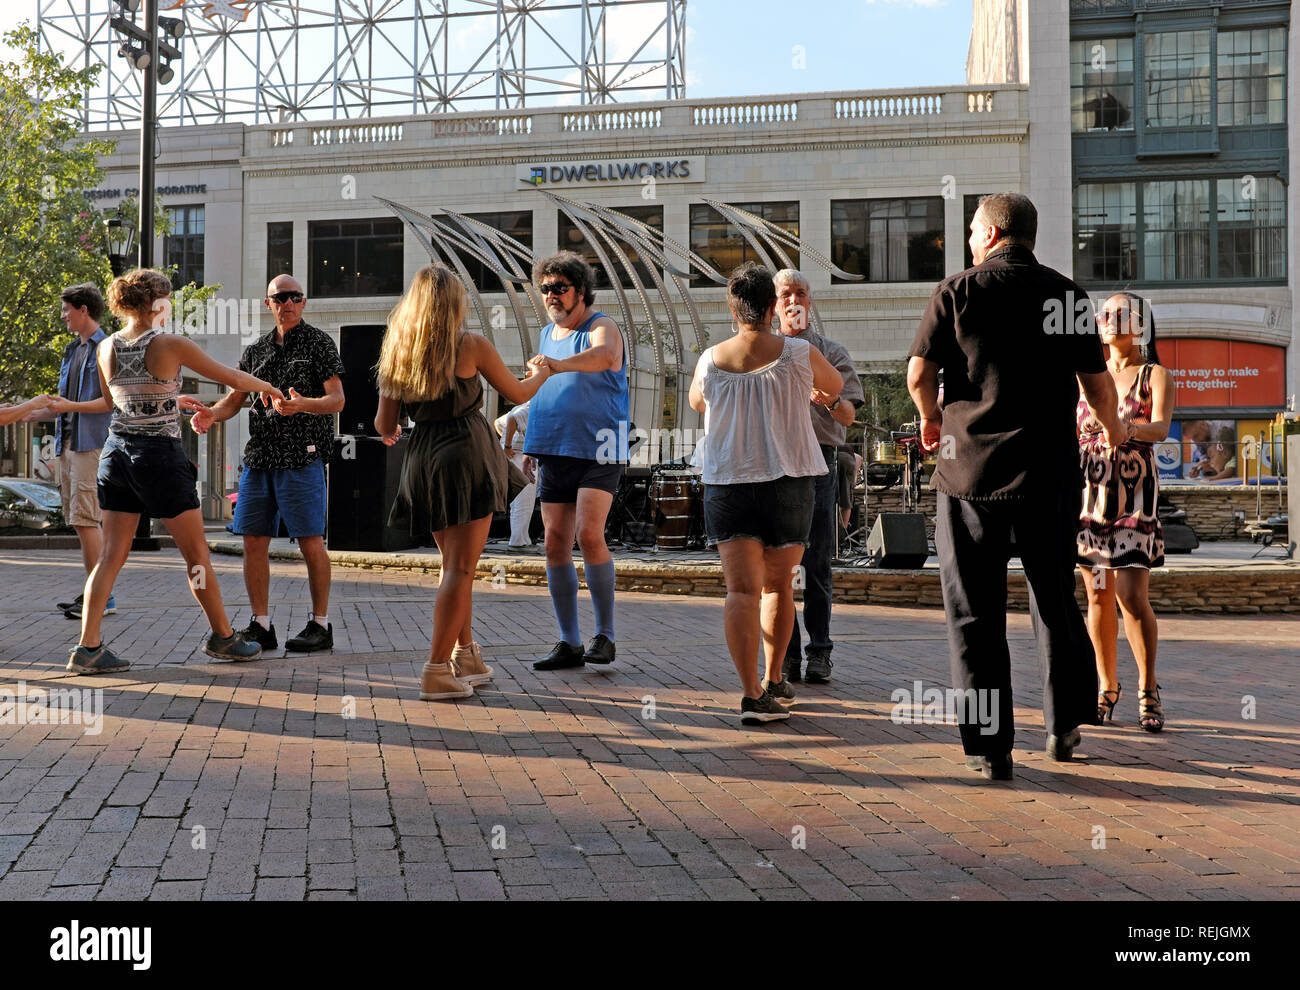 Le persone praticano danza si sposta su di noi Plaza durante il Playhouse Square 'Dancing sotto le stelle" programma estivo in Cleveland, Ohio, USA. Foto Stock